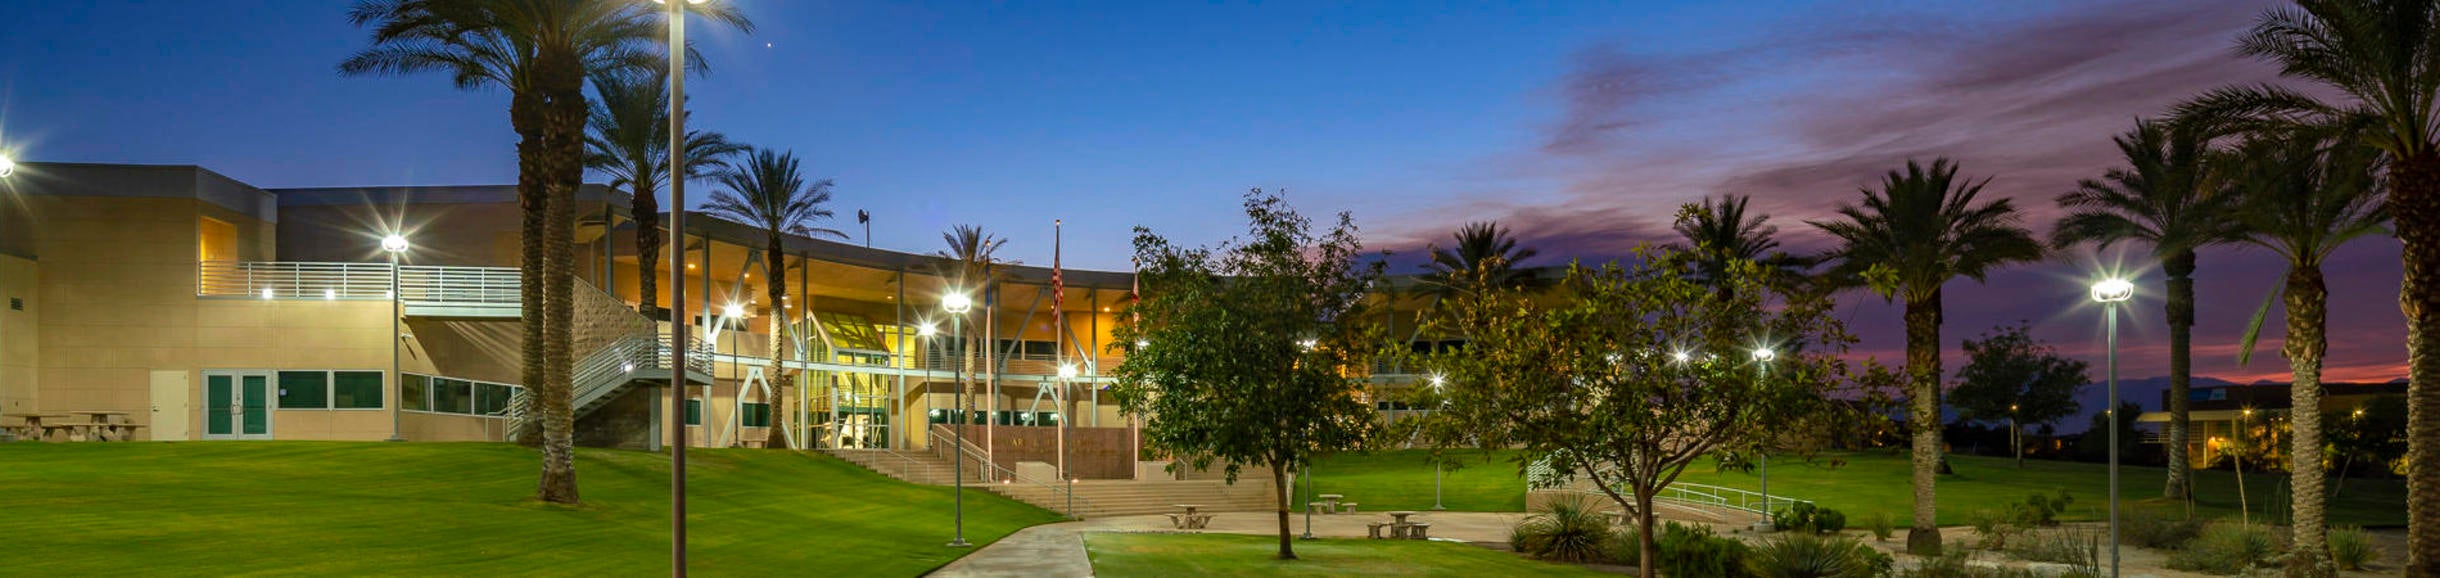 UCR Palm Desert Campus